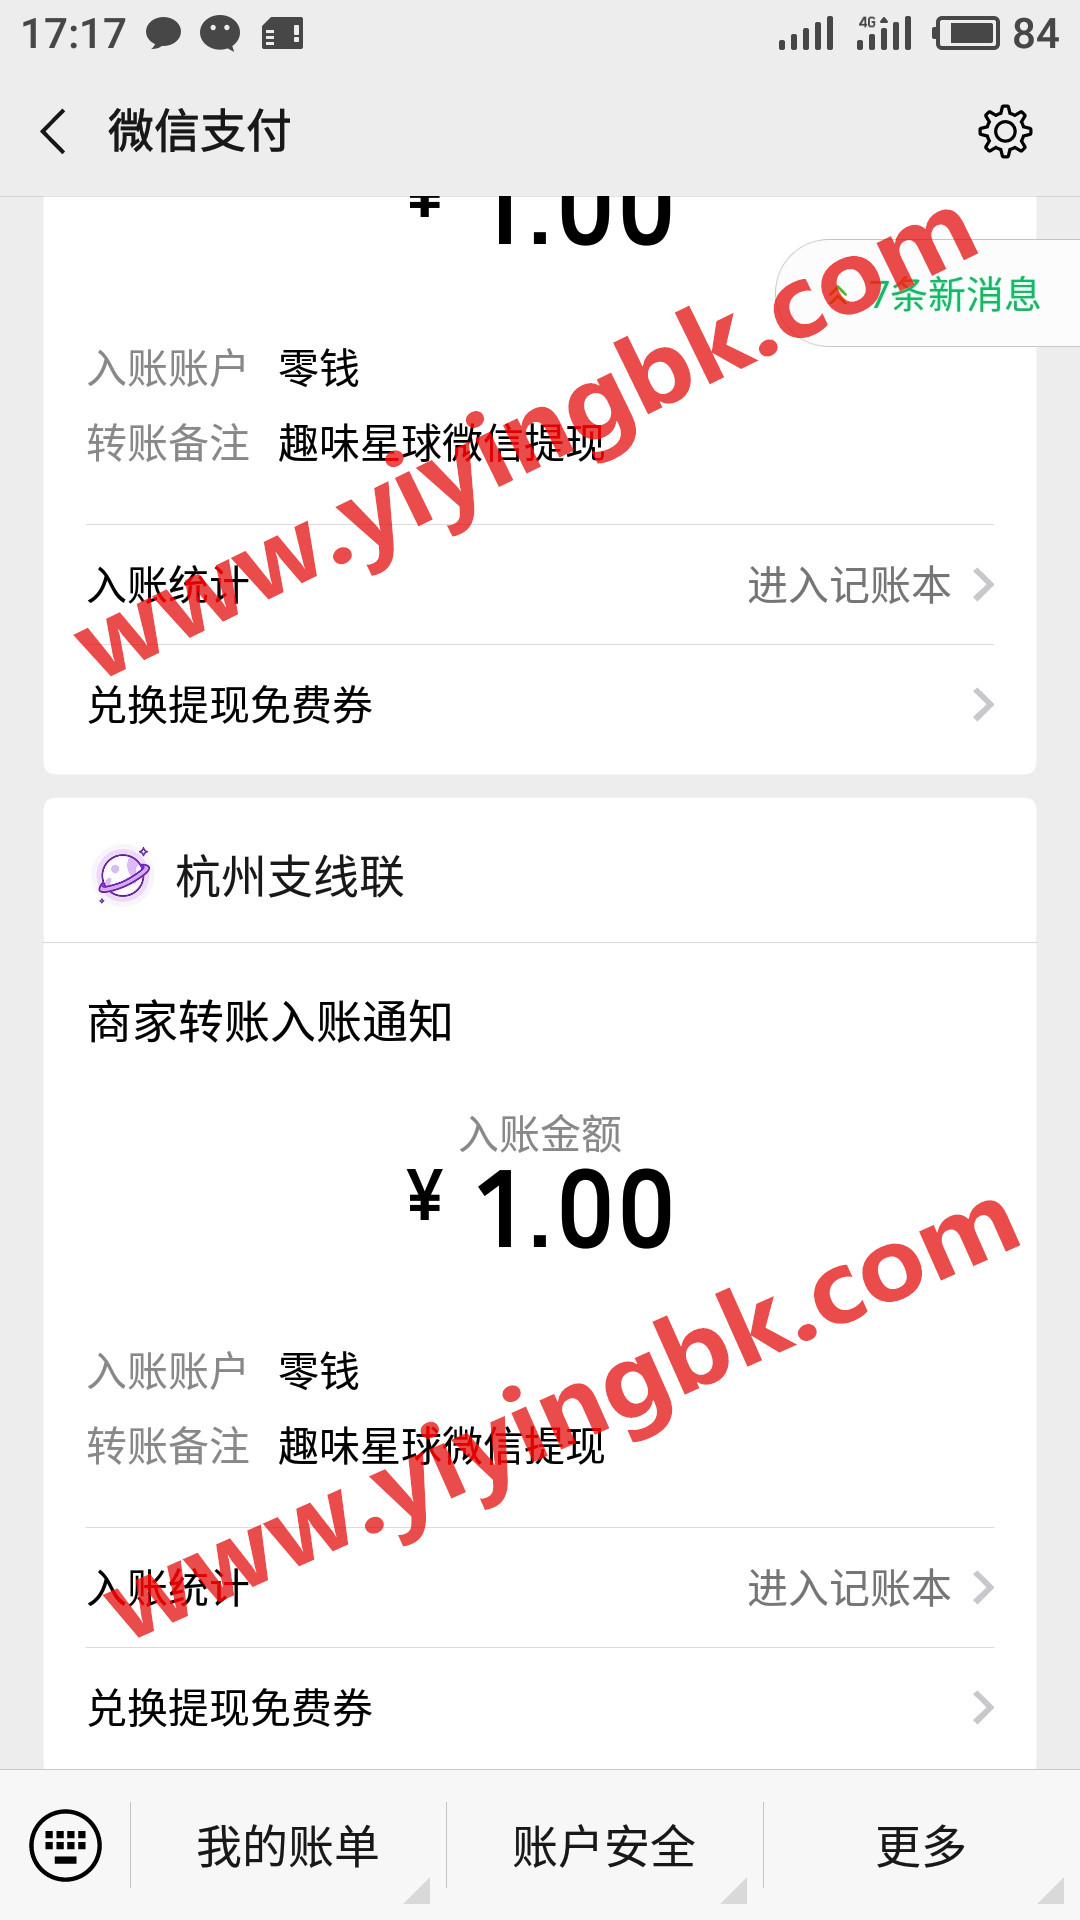 免费玩手游领红包赚零花钱，微信1元提现支付秒到账。www.yiyingbk.com